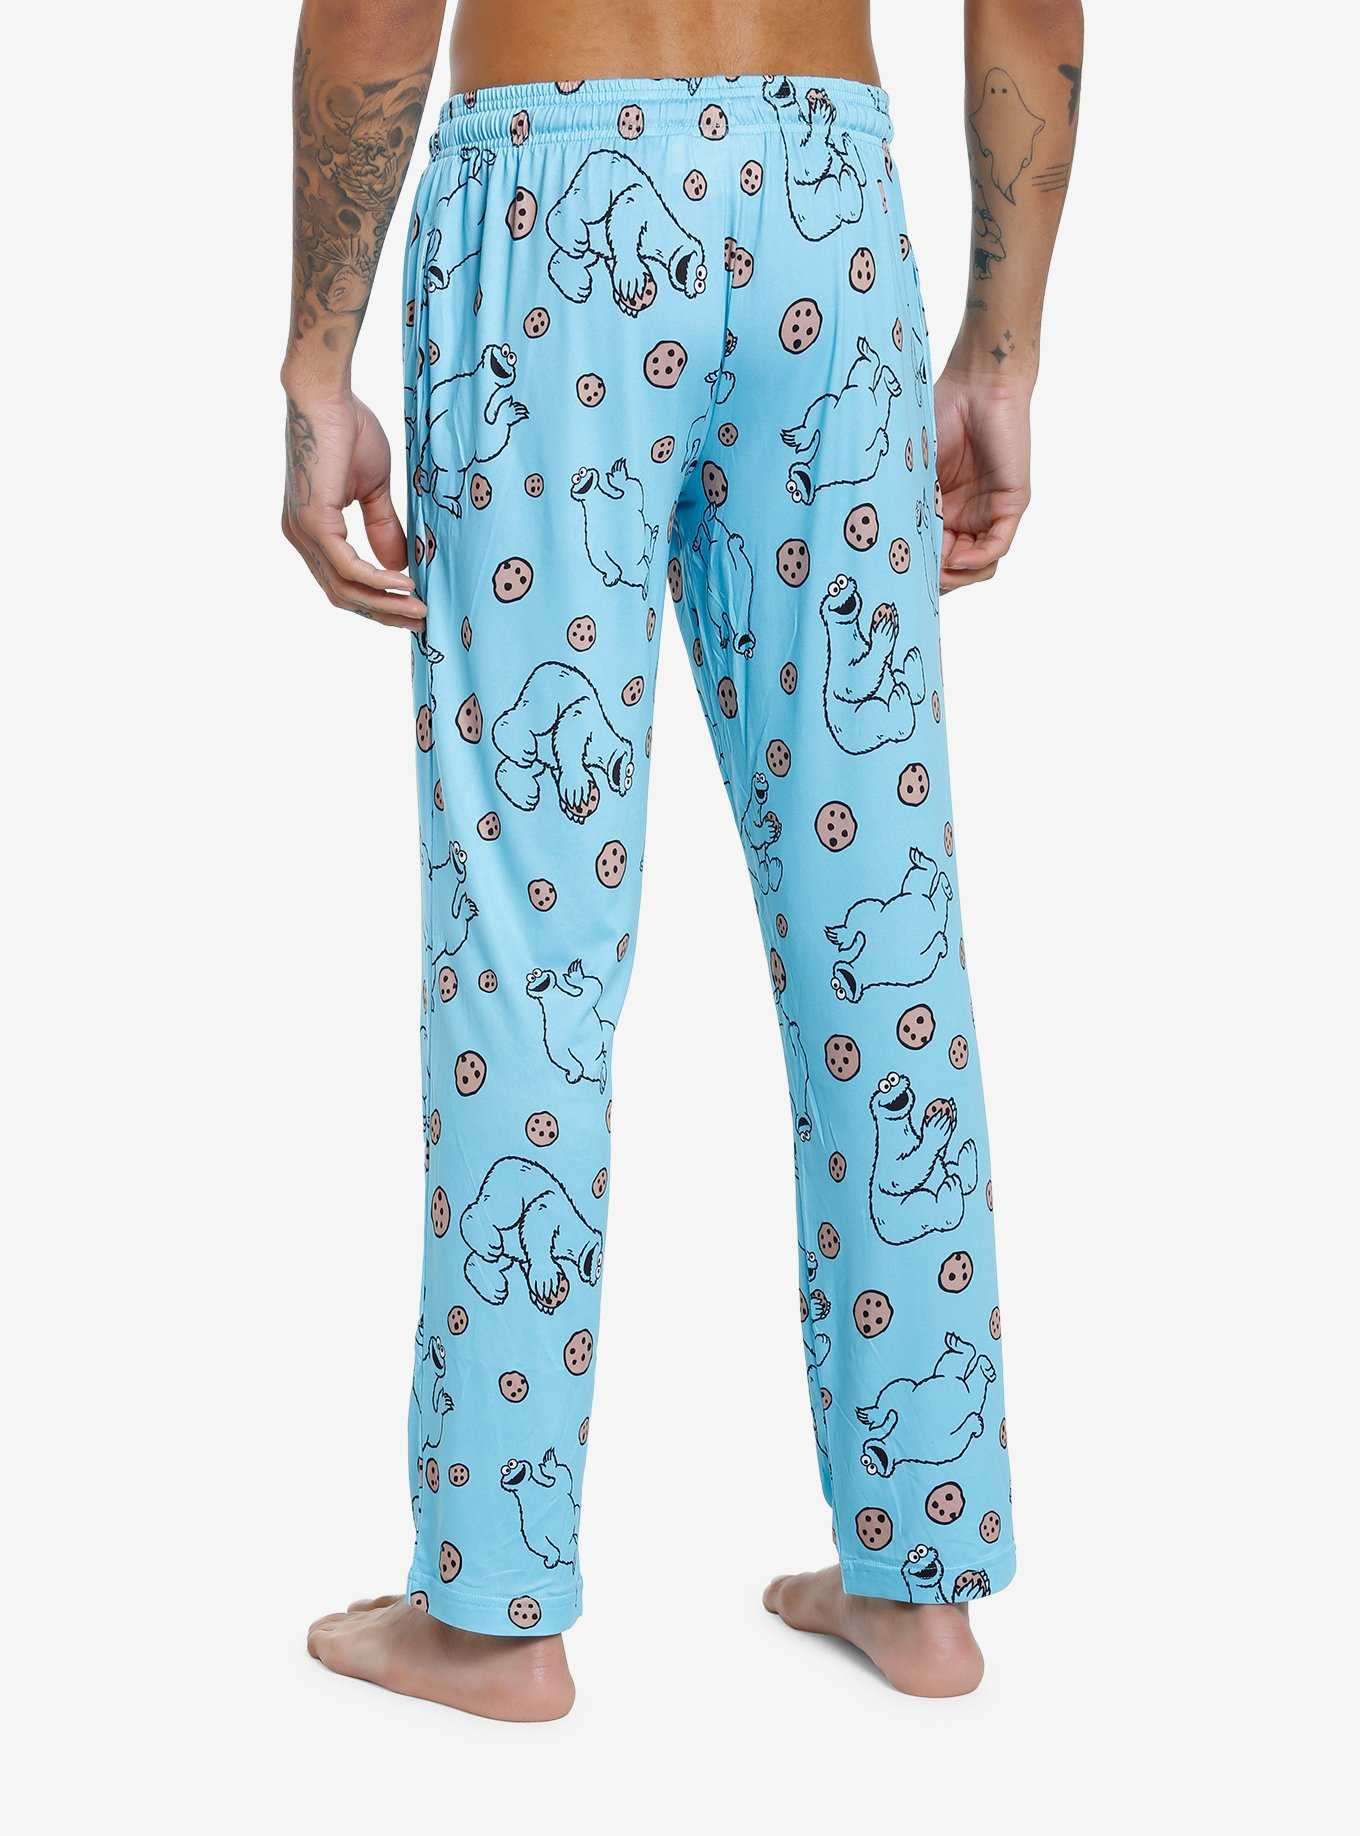 Sesame Street Cookie Monster Pajama Pants, , hi-res